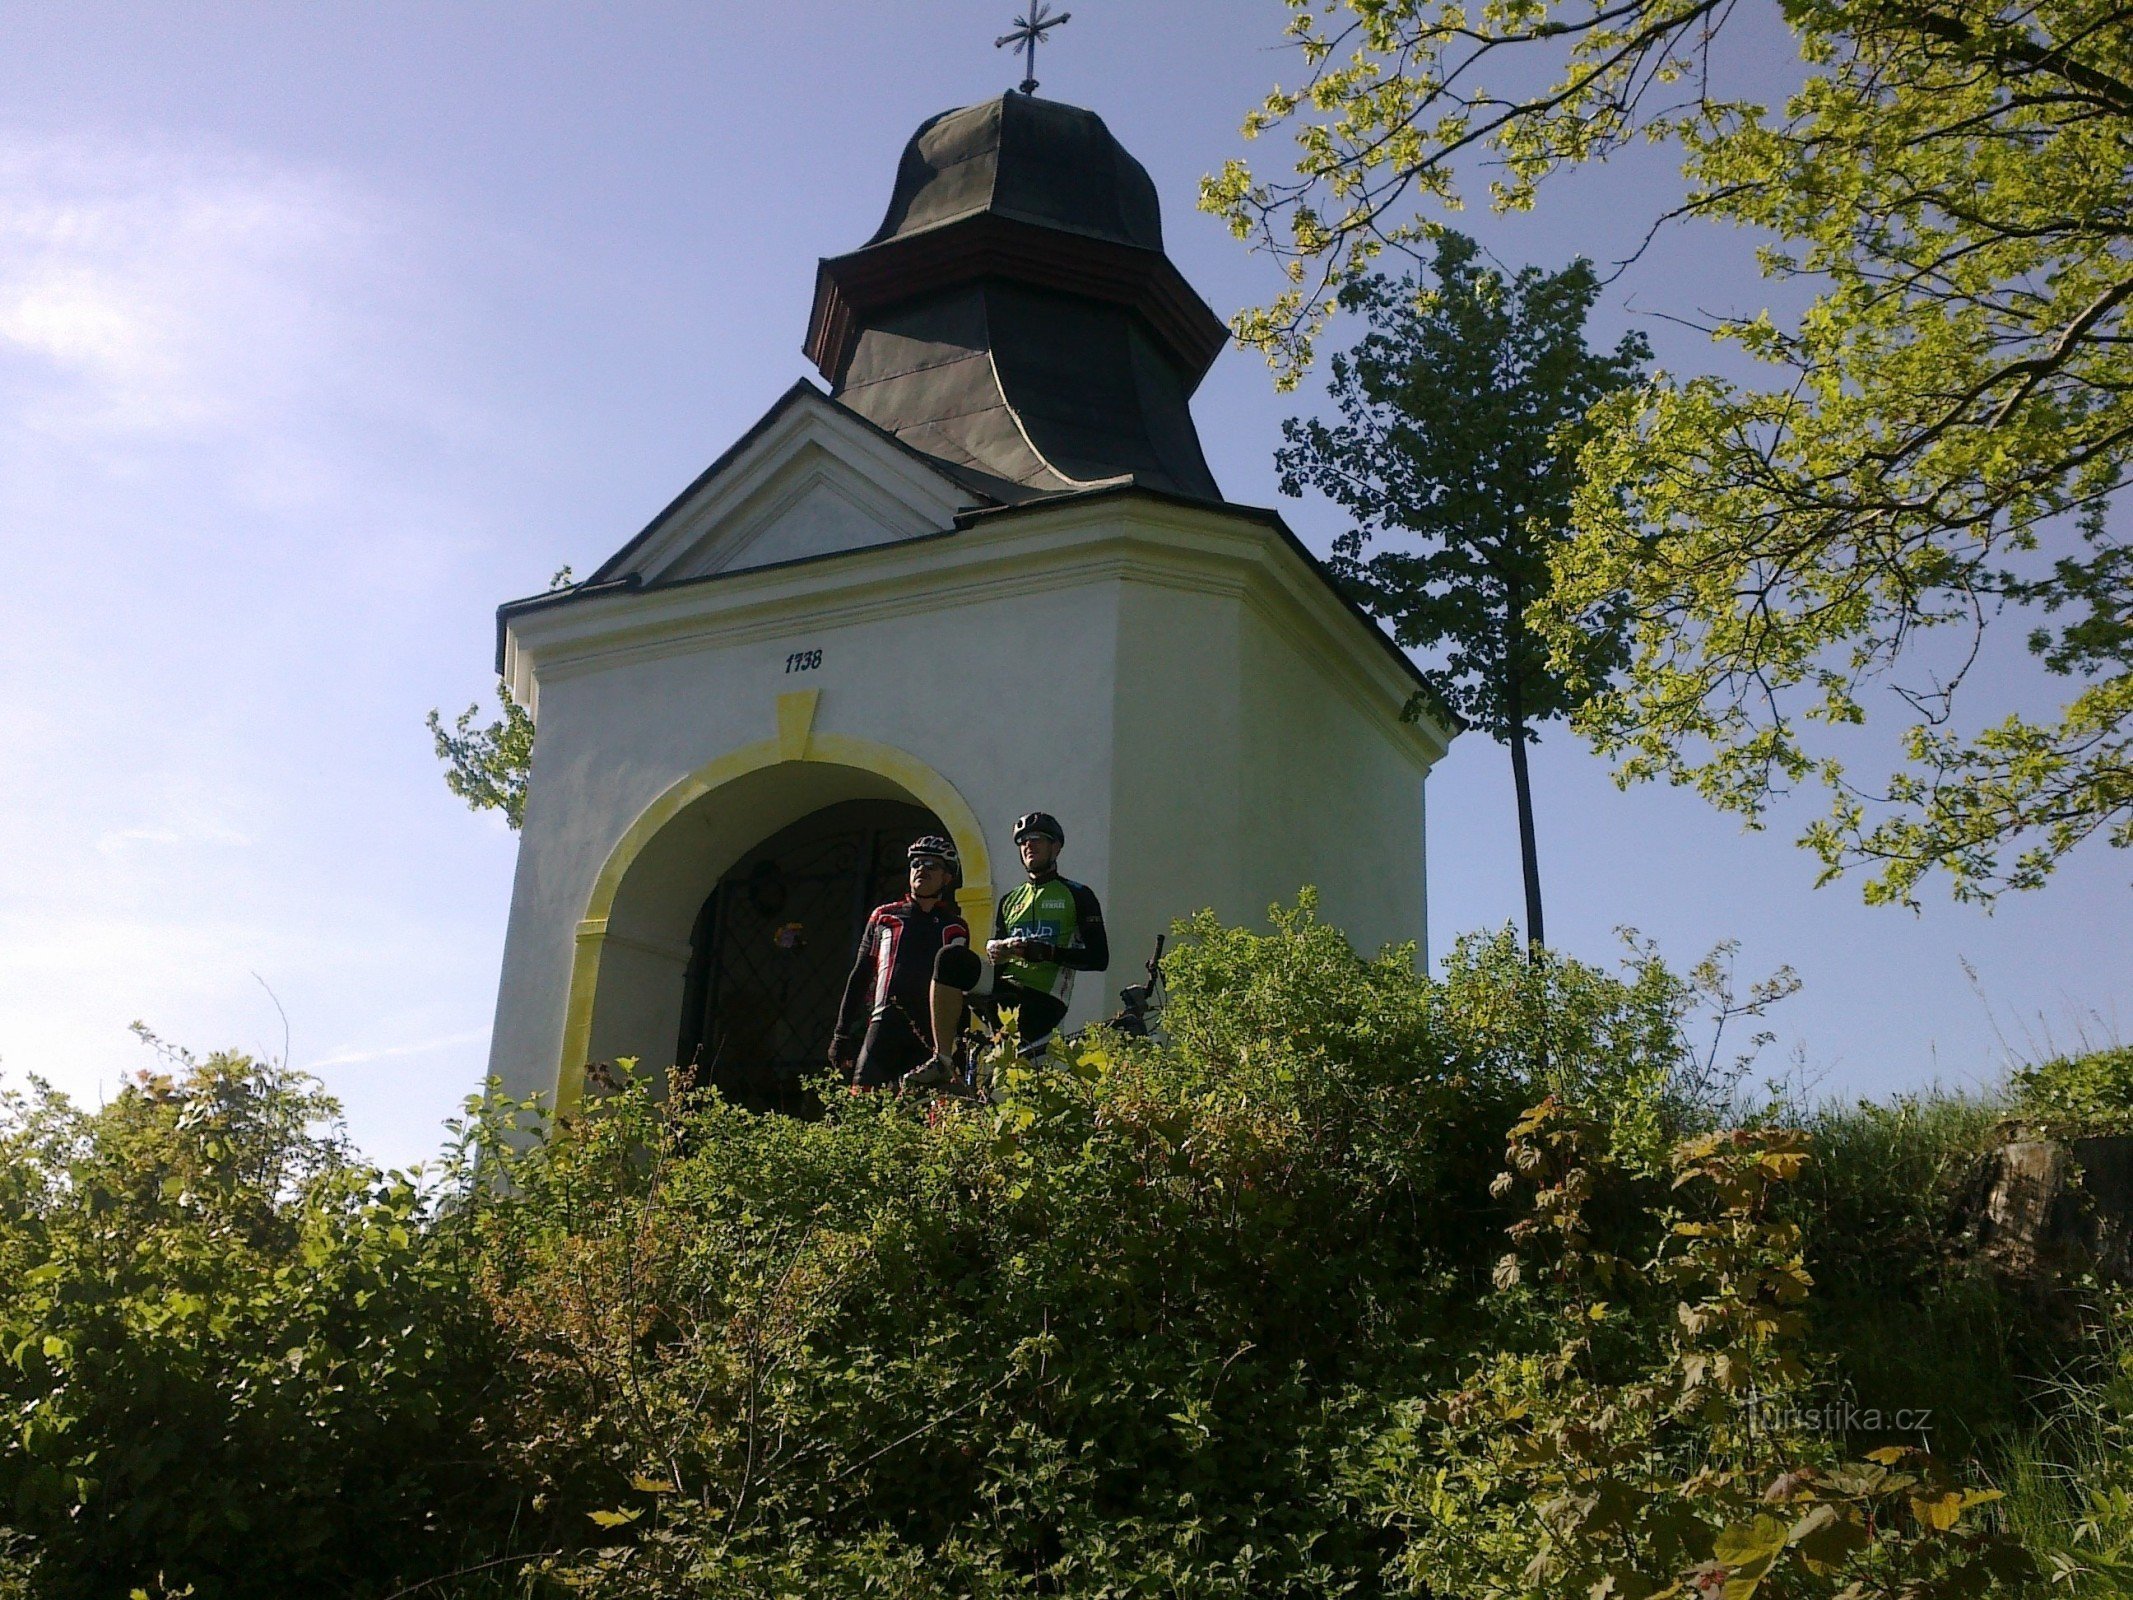 Chapel on Kalvária nad Želiv.